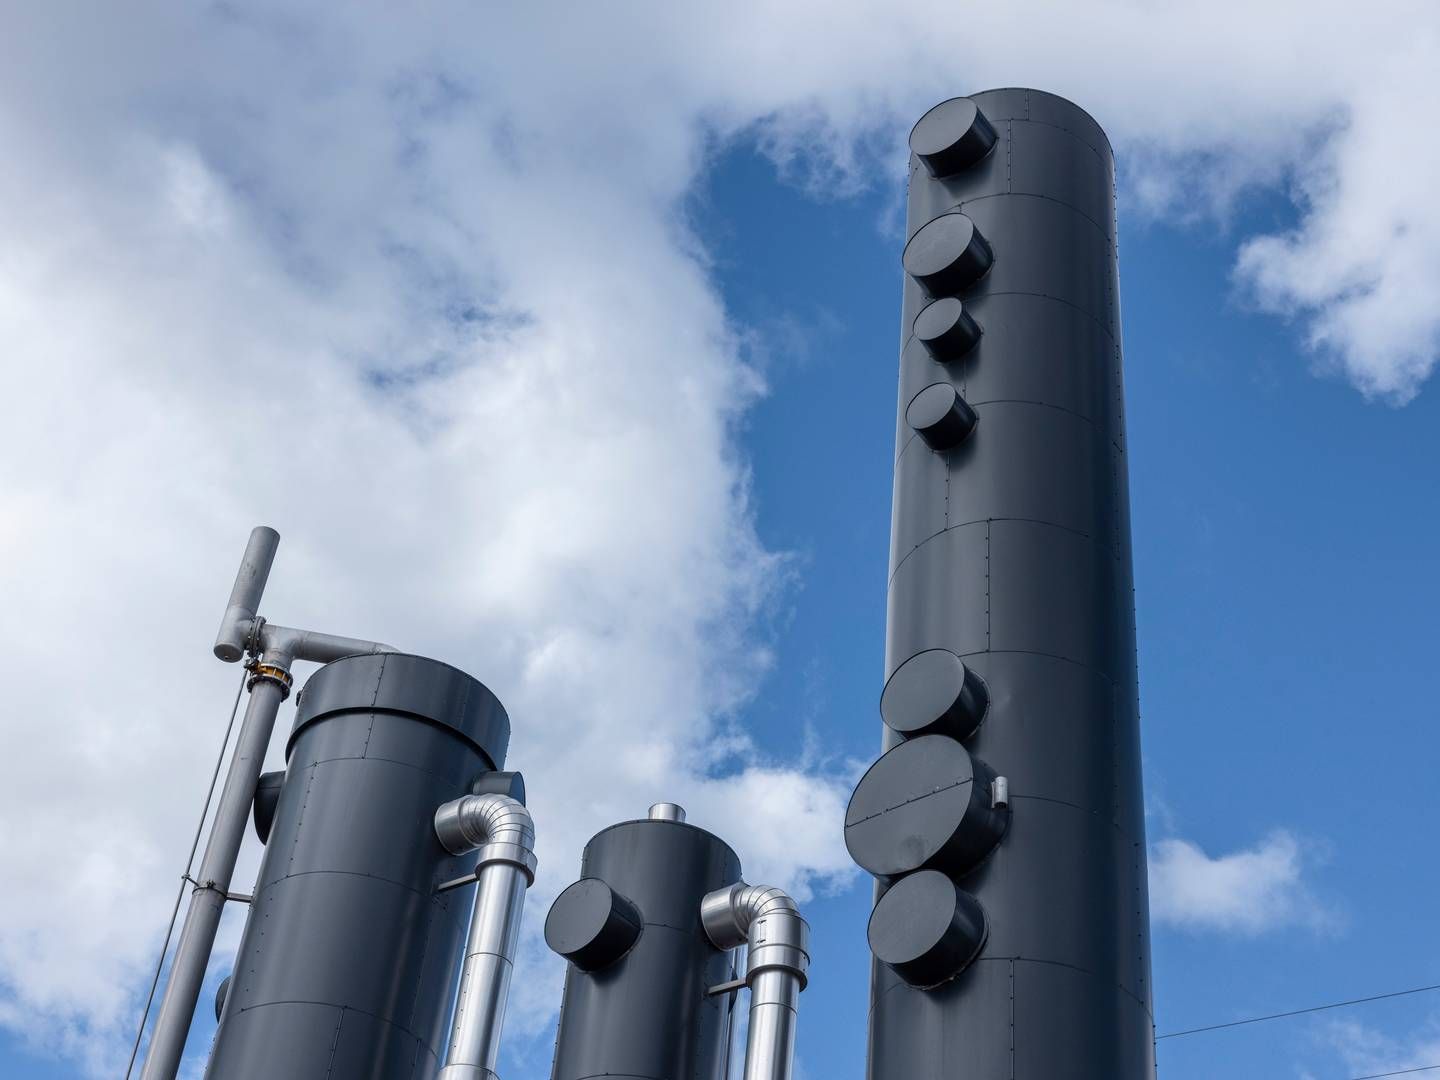 Biogasanlæg bruger i dag filtre, der filtrerer afkastluften fra biogasproduktionen. Men de kan altså blive udfordrede, lyder konklusionen i forskningsprojektet. | Foto: Christian Falck Wolff